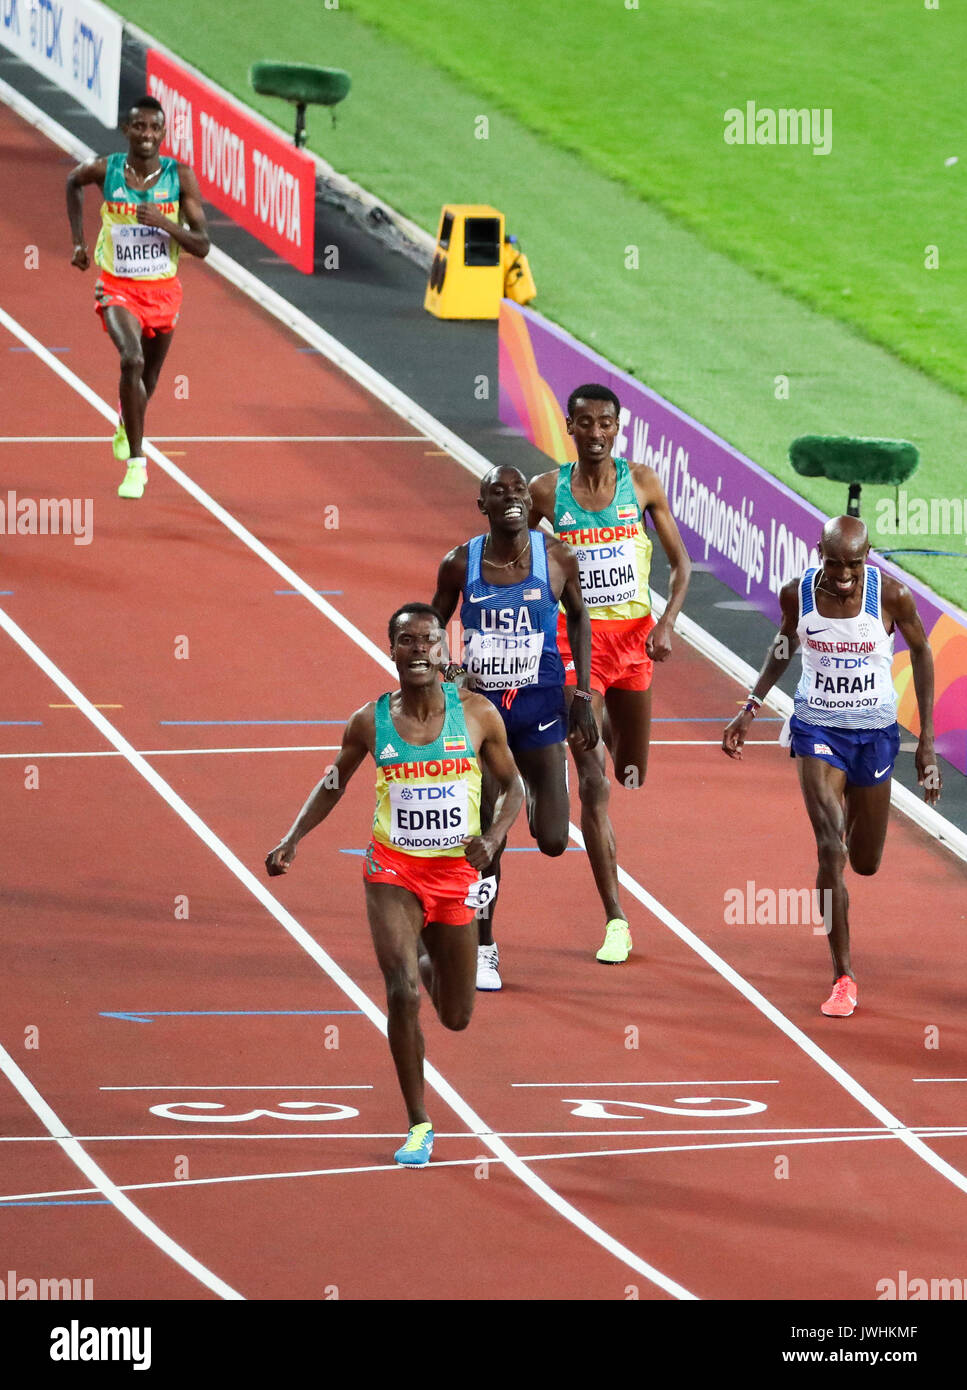 Muktar Edris, Éthiopie, sprints pour la gloire à venir de Mo Farah, Grande-Bretagne, et Paul Kipkemoi Chelimo, USA, dans l'épreuve du 5000m finale le jour 9 de l'IAAF 2017 Championnats du monde de Londres au London Stadium. © Paul Davey. Banque D'Images